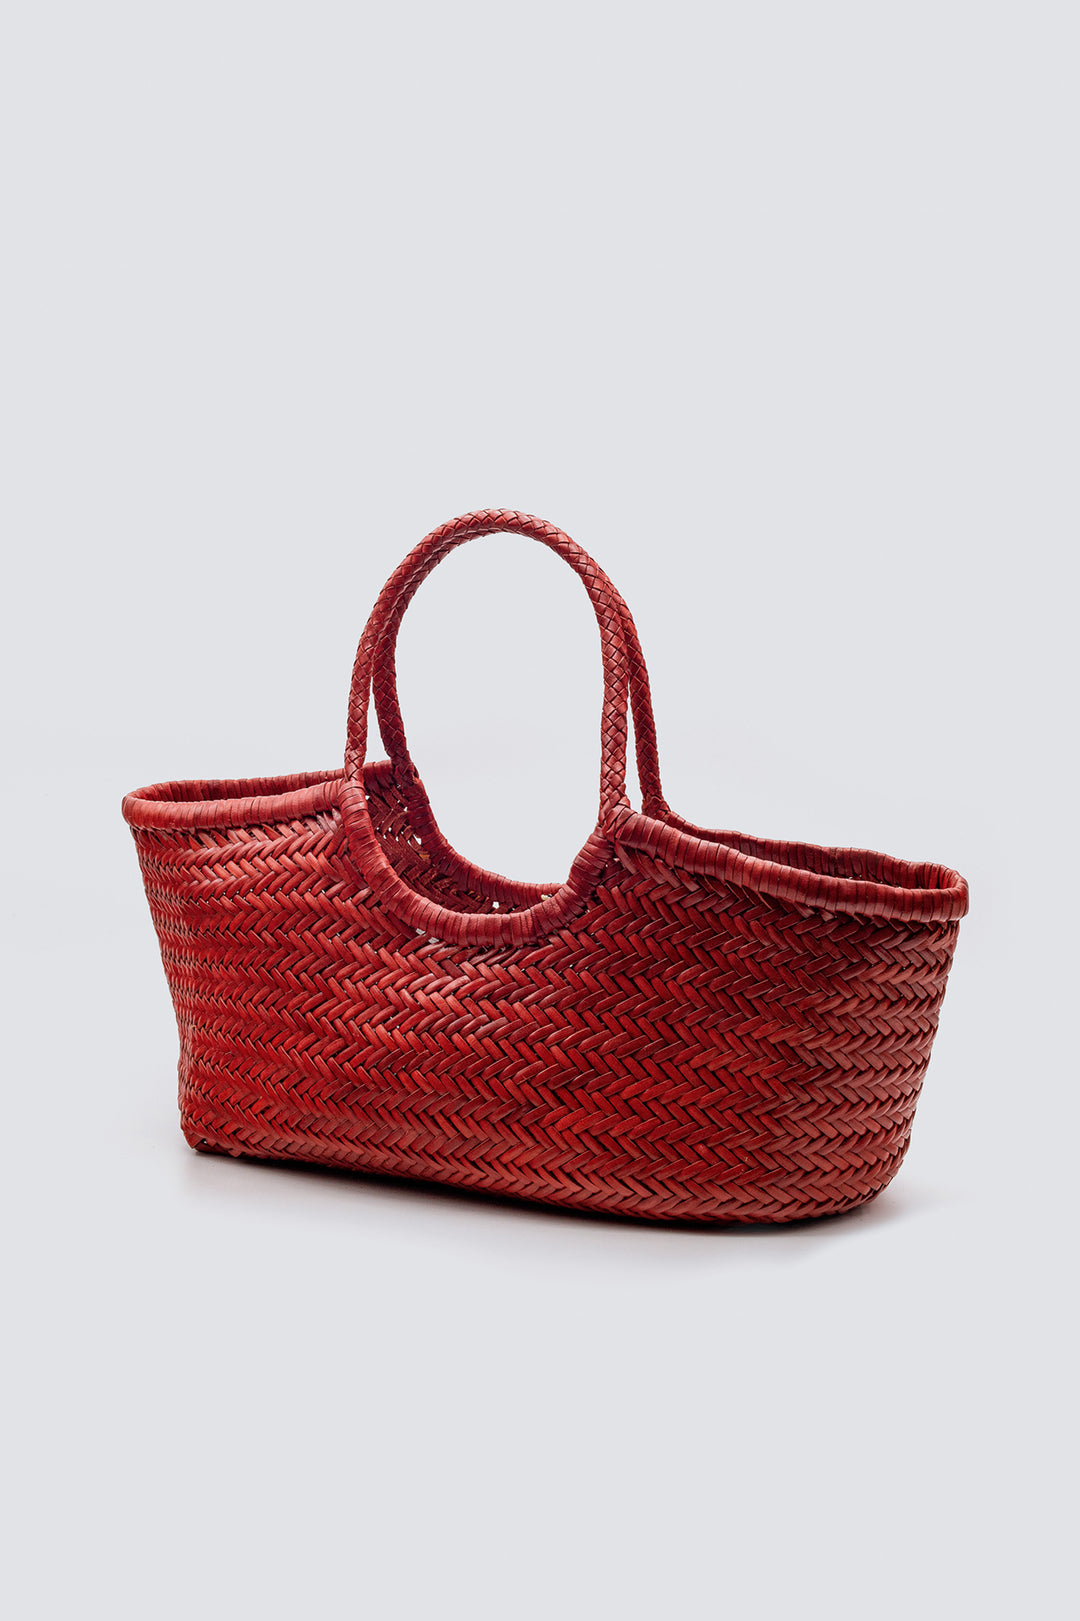 Dragon Diffusion woven leather bag handmade - Nantucket Big Red